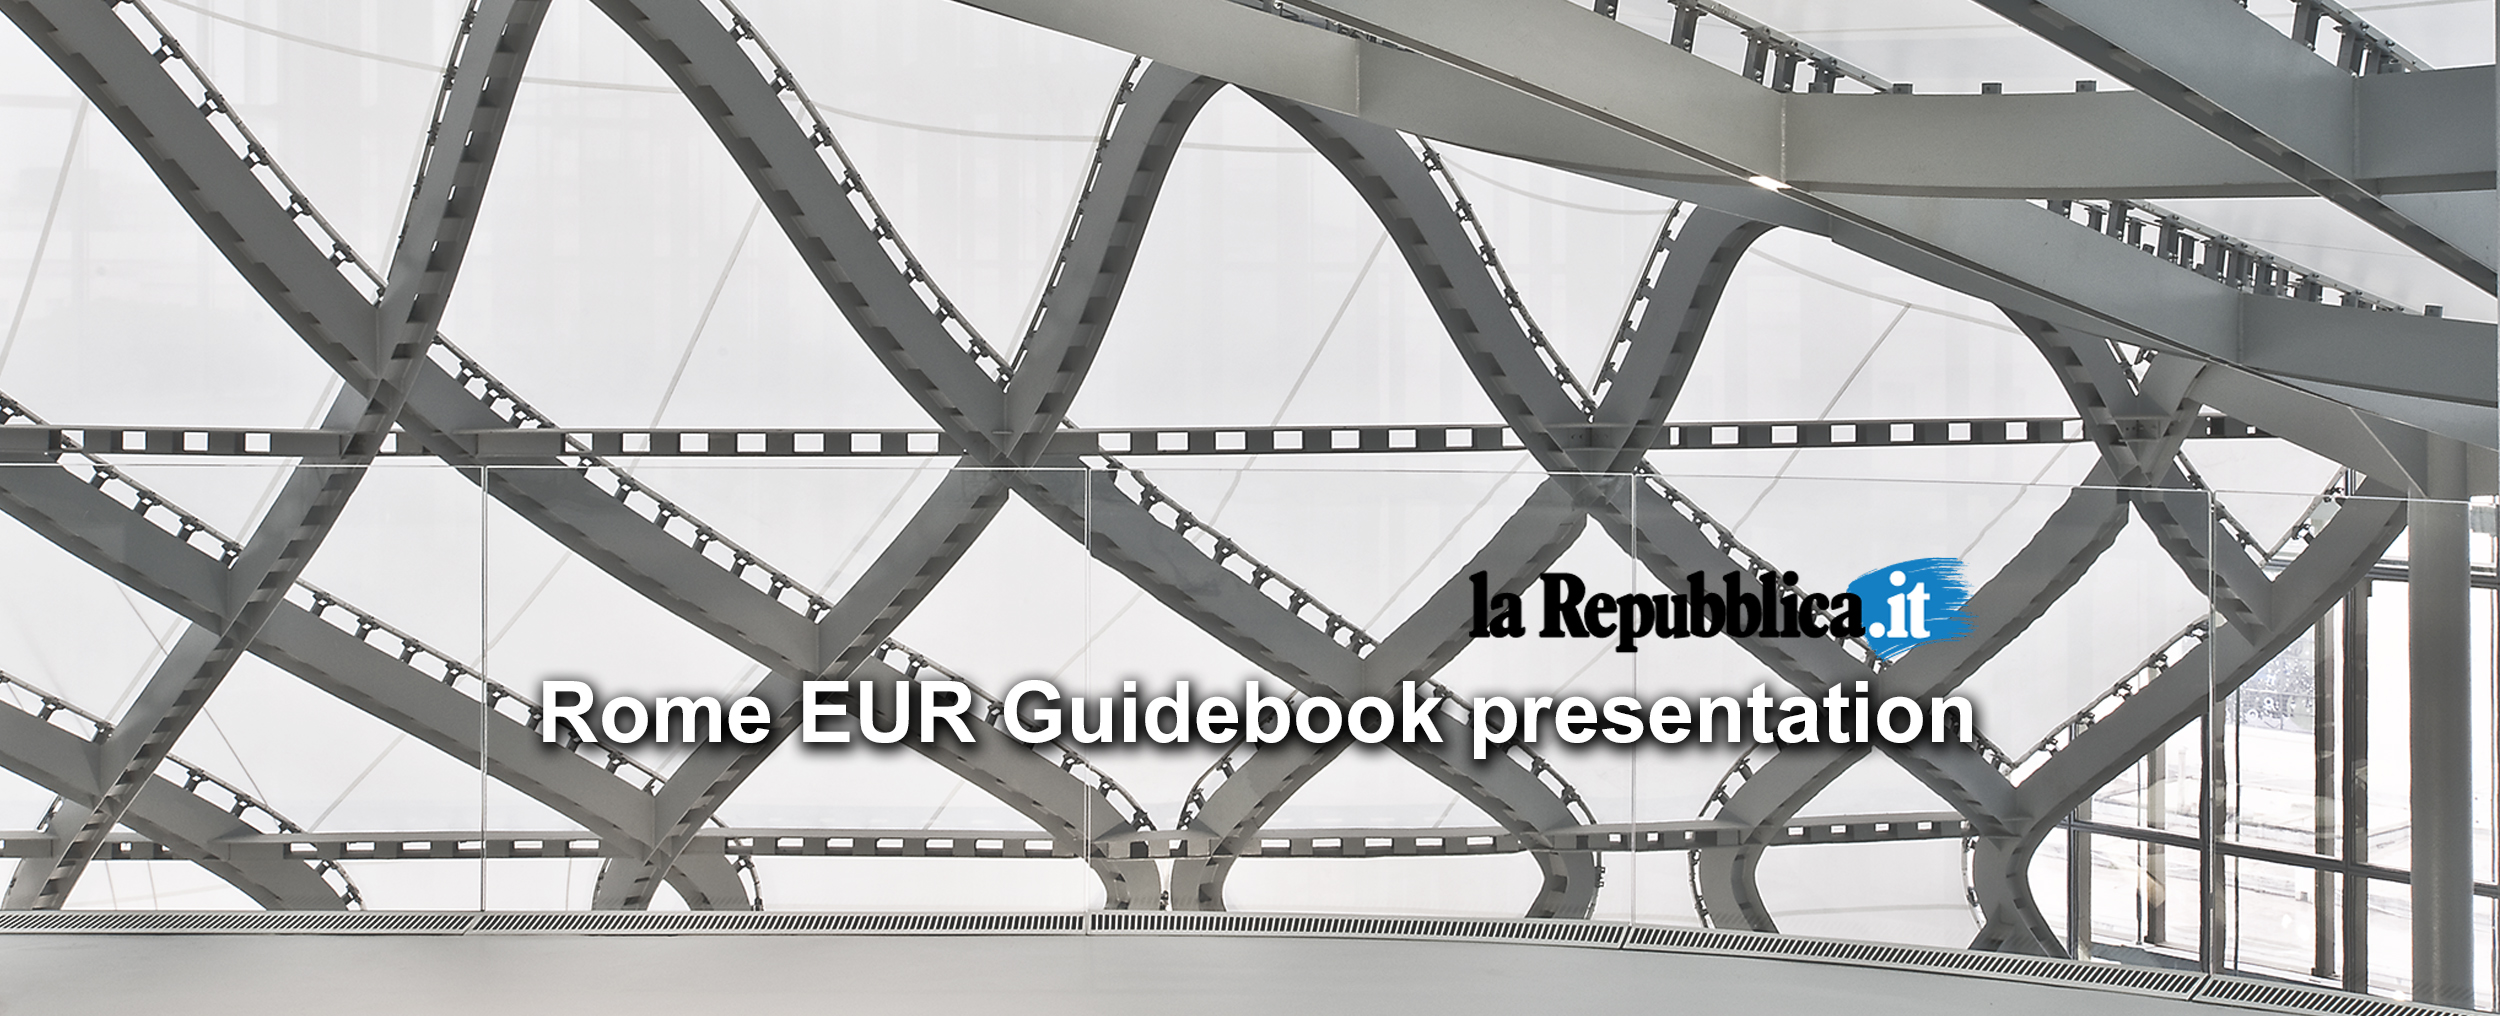 The EUR Roma guidebook presentation2020, June 26